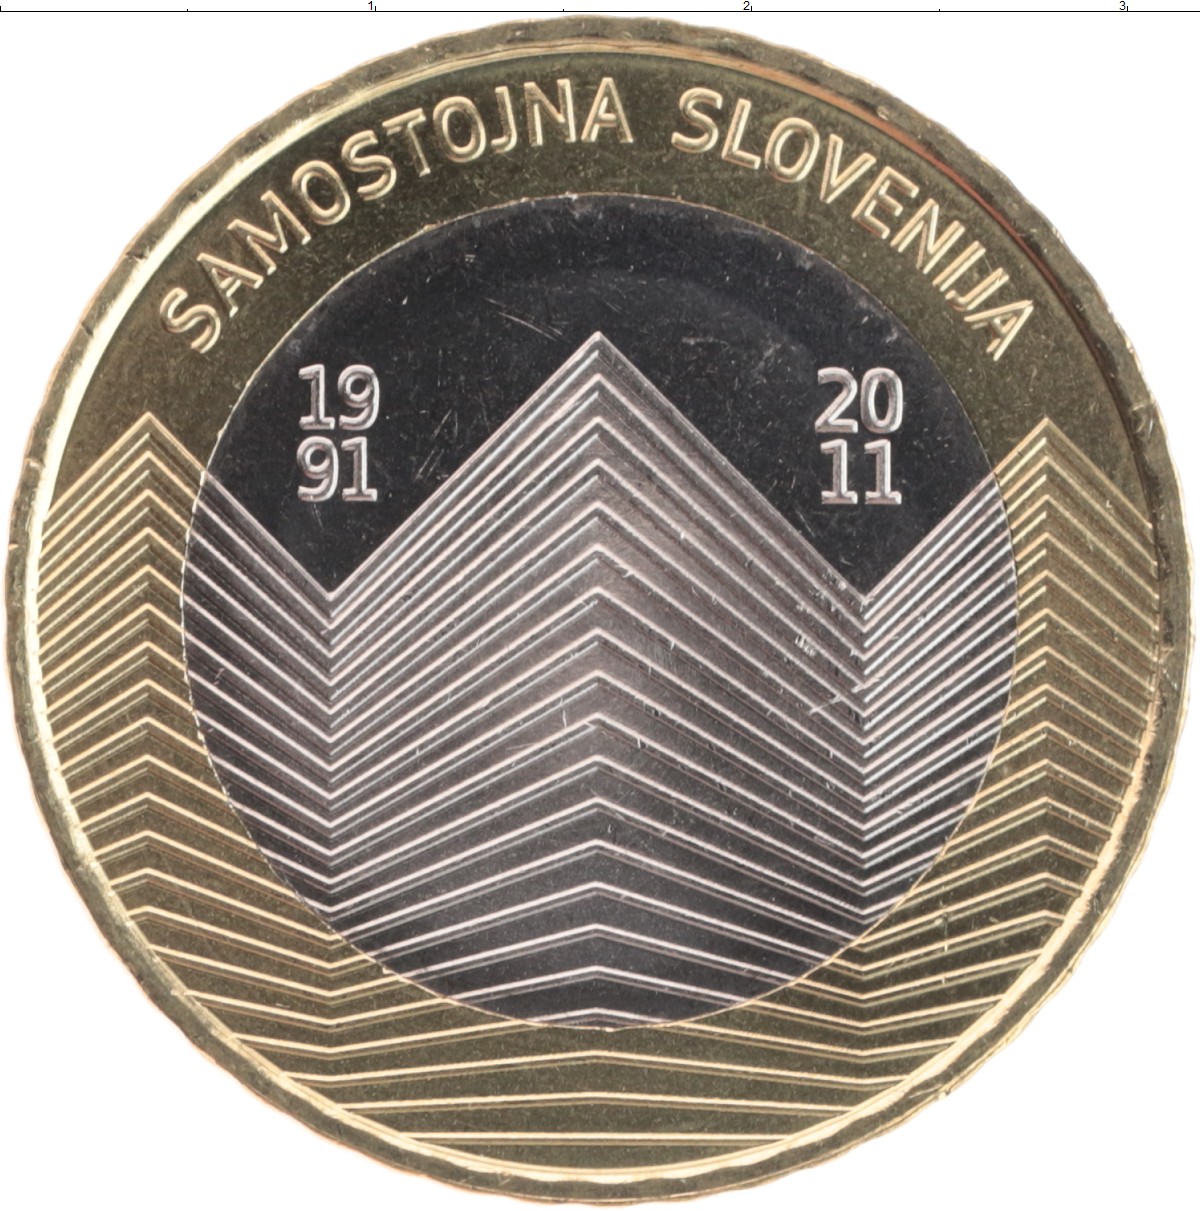 2022 Словения Матия Яма монета 3 евро! 